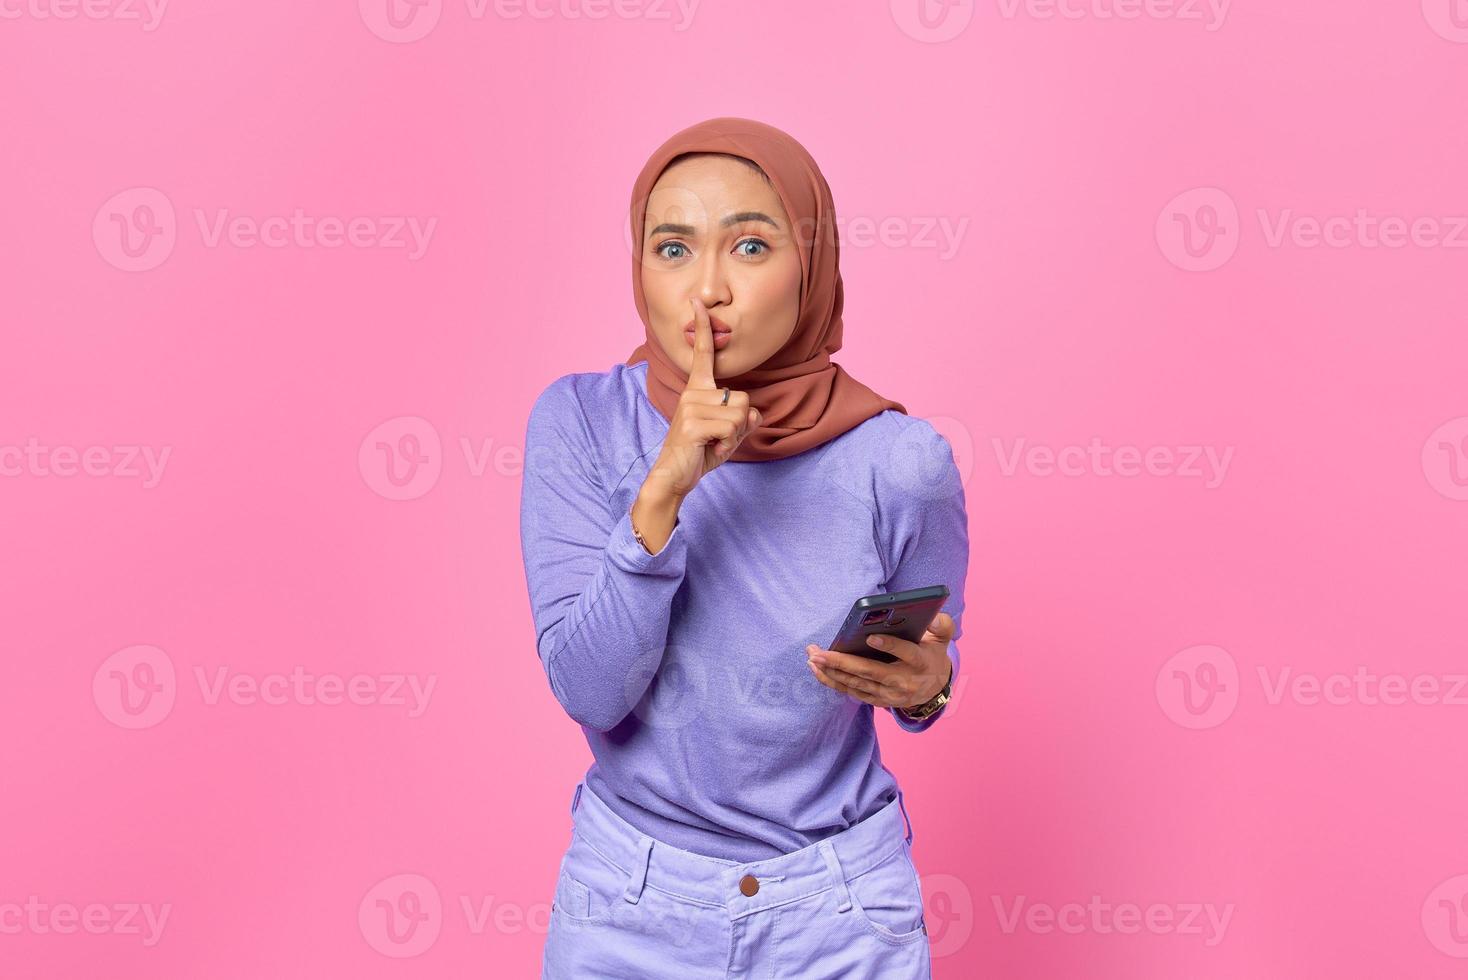 vacker ung asiatisk kvinna som håller mobiltelefon och gör tystnadsgest på rosa bakgrund foto